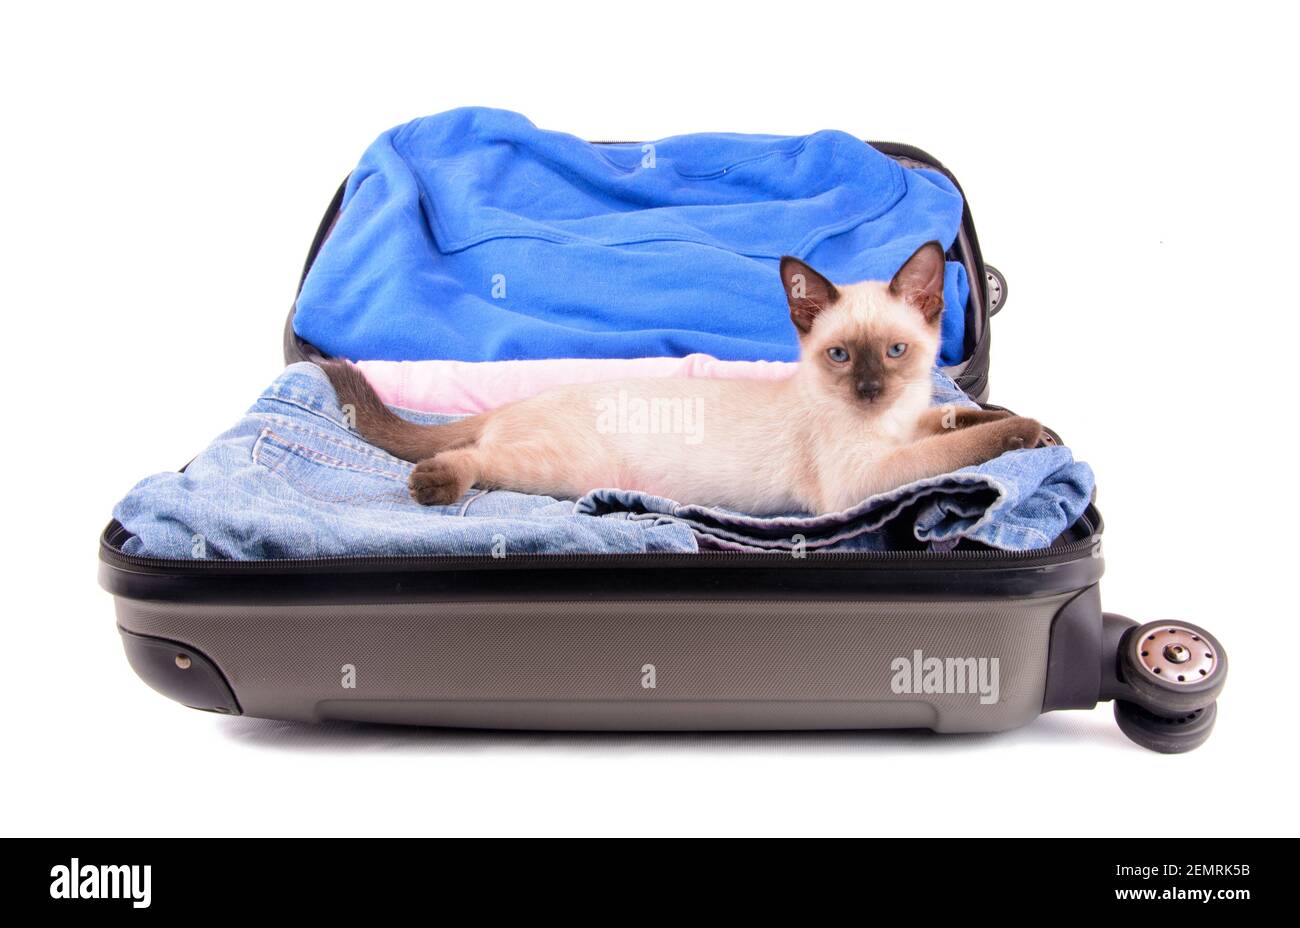 Jeune chat siamois dans une valise ouverte emballée, prêt pour le voyage ; sur fond blanc Banque D'Images